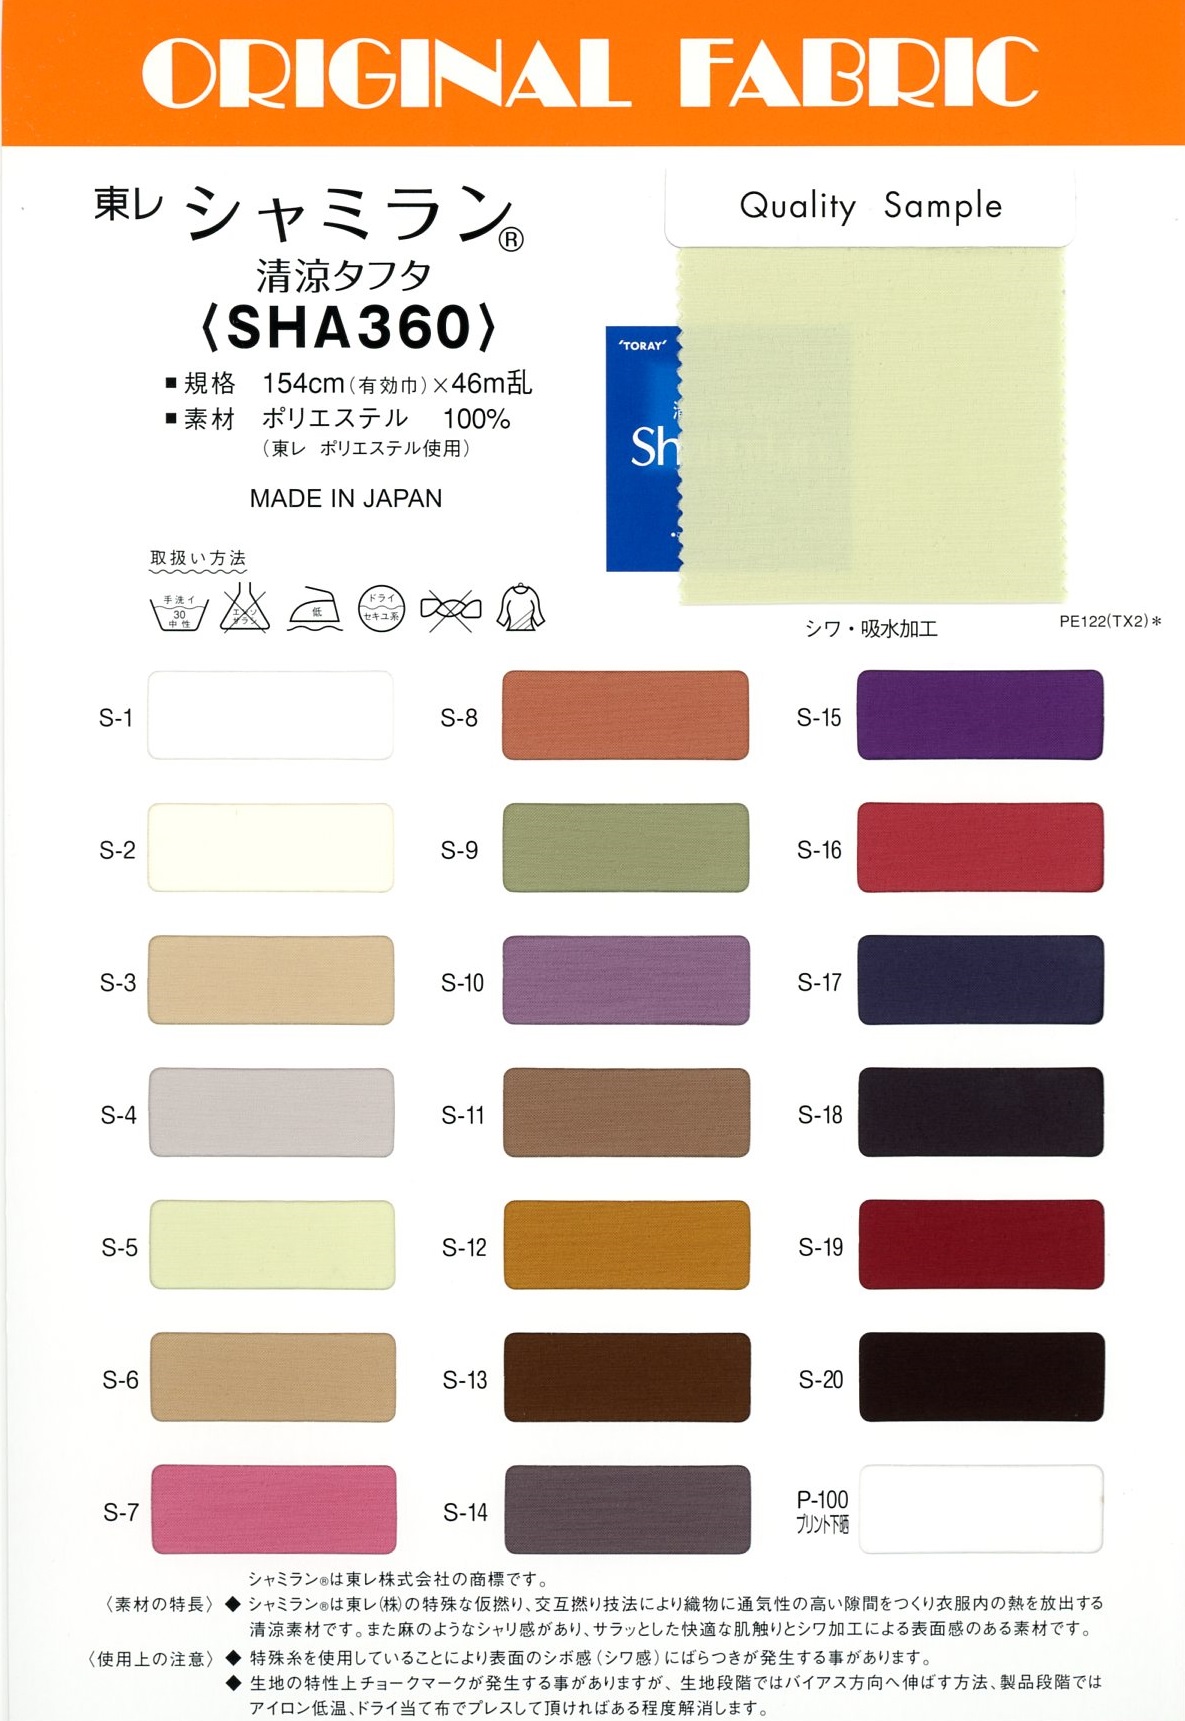 SHA360 Tafetán Refrescante Shamiran[Fabrica Textil] Masuda